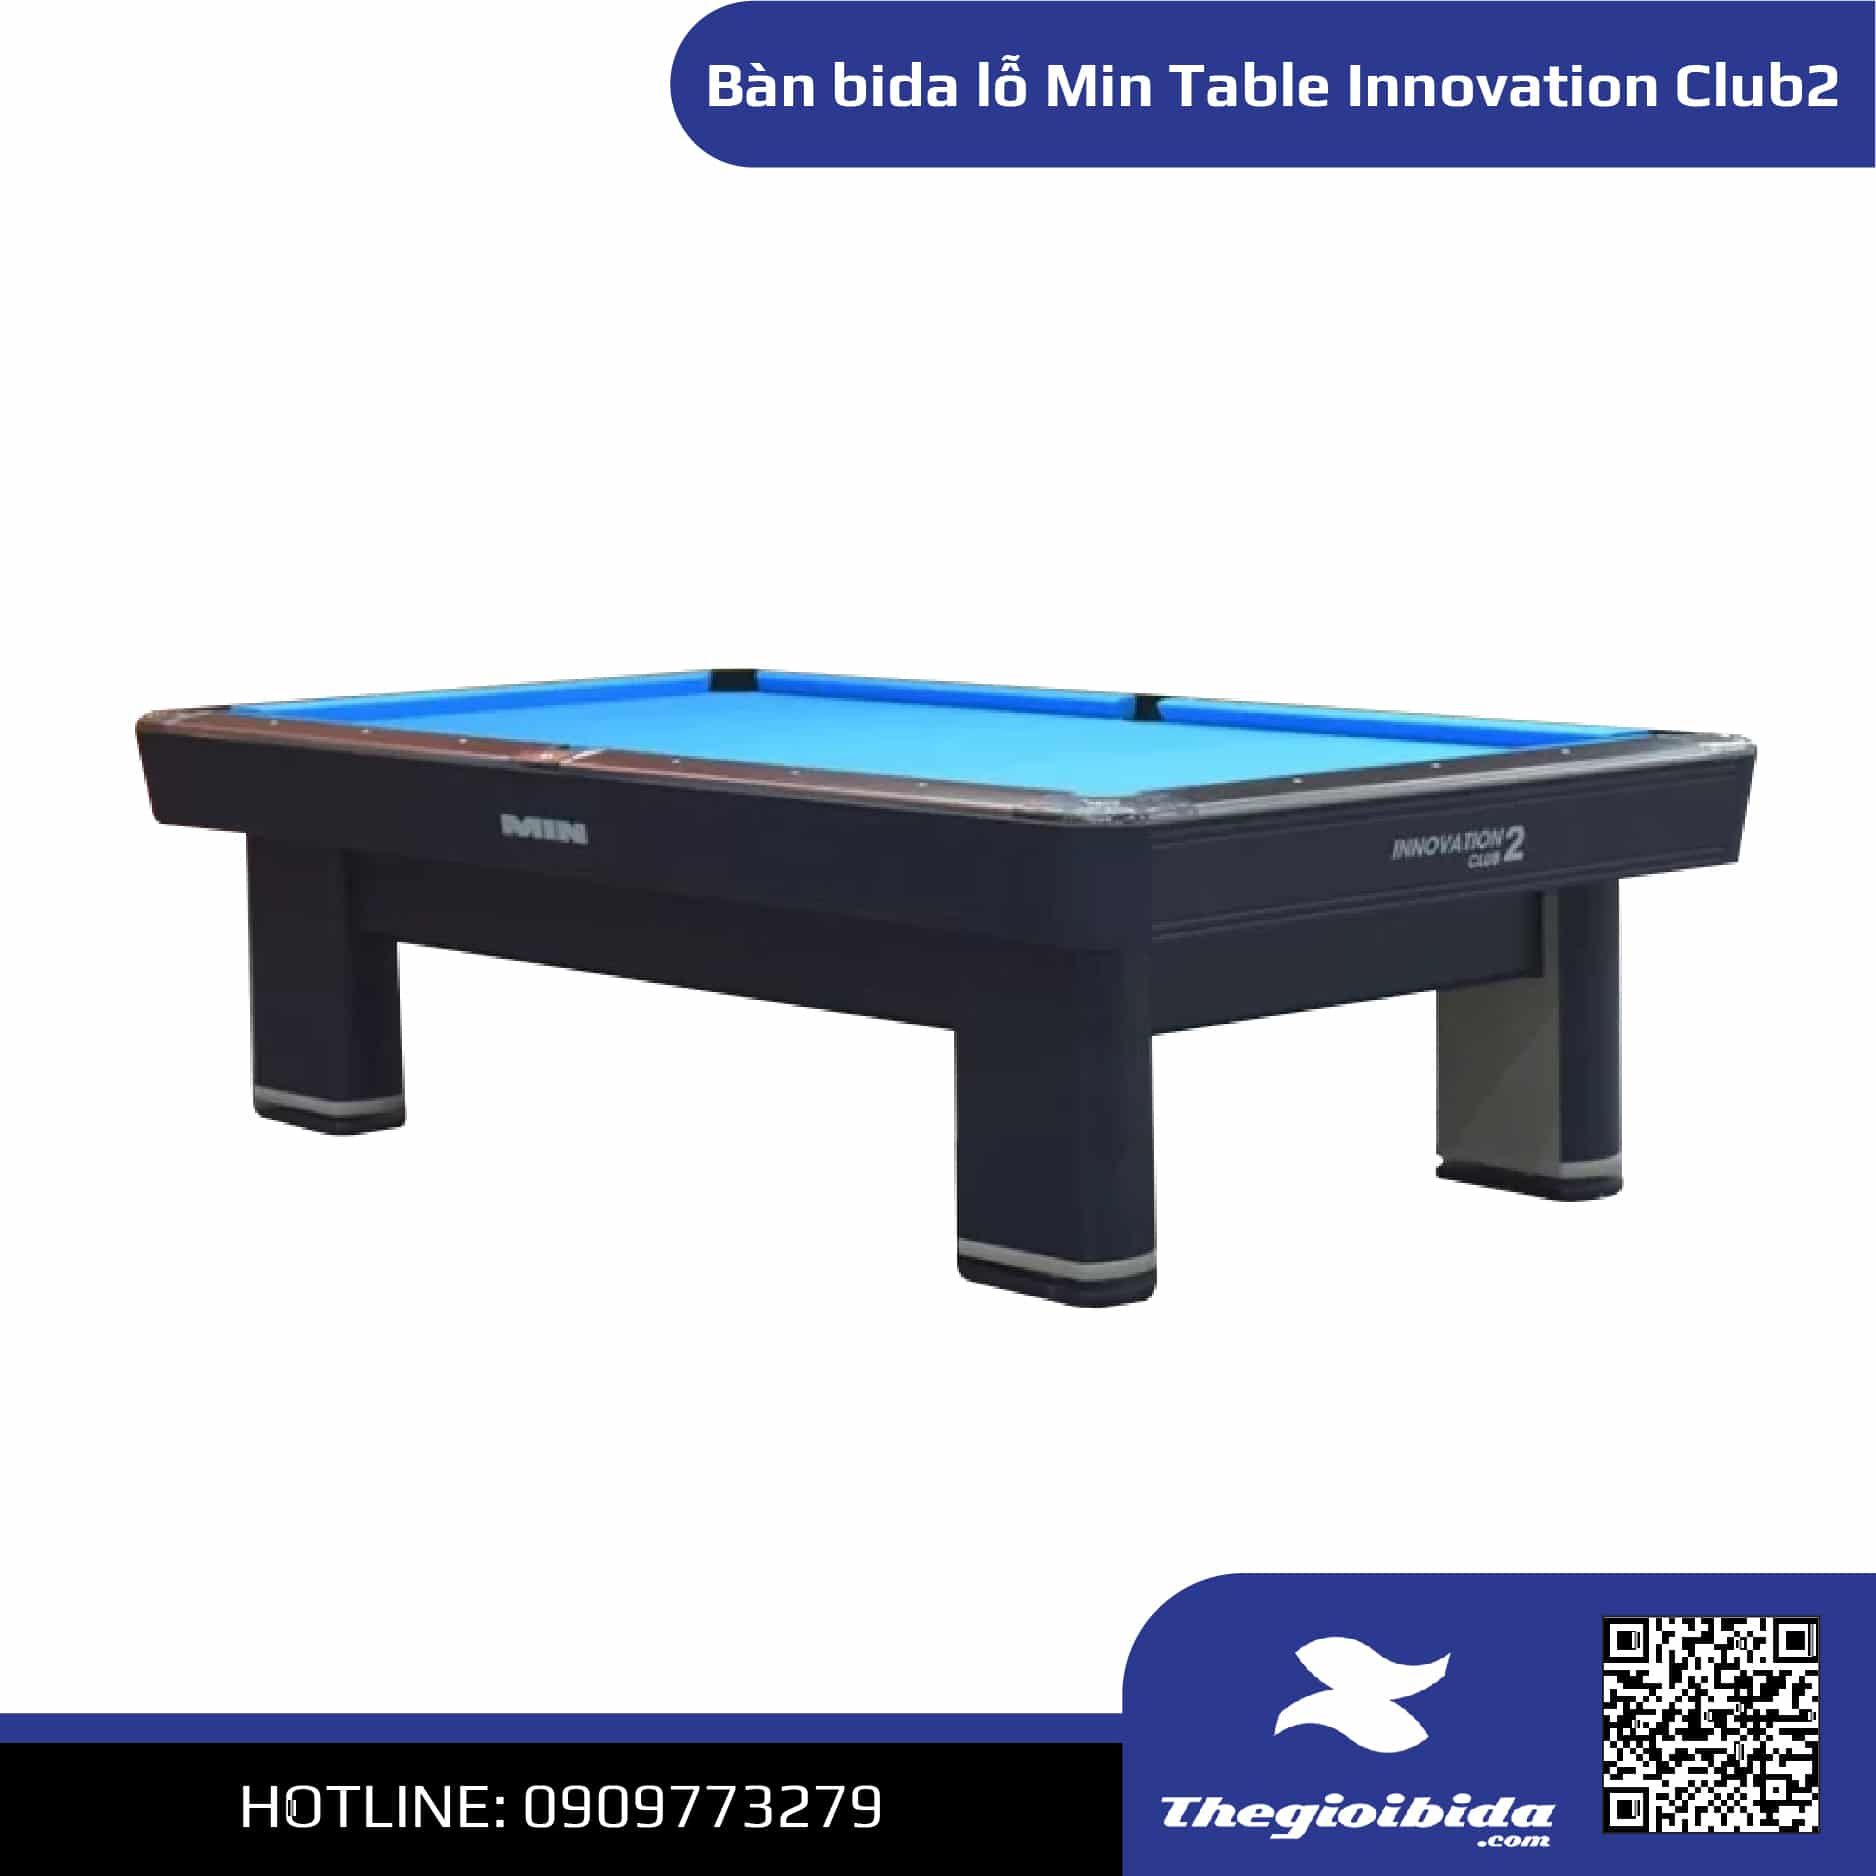 Bàn bida lỗ Min Table Innovation Club2 - Giá: 80.000.000đ